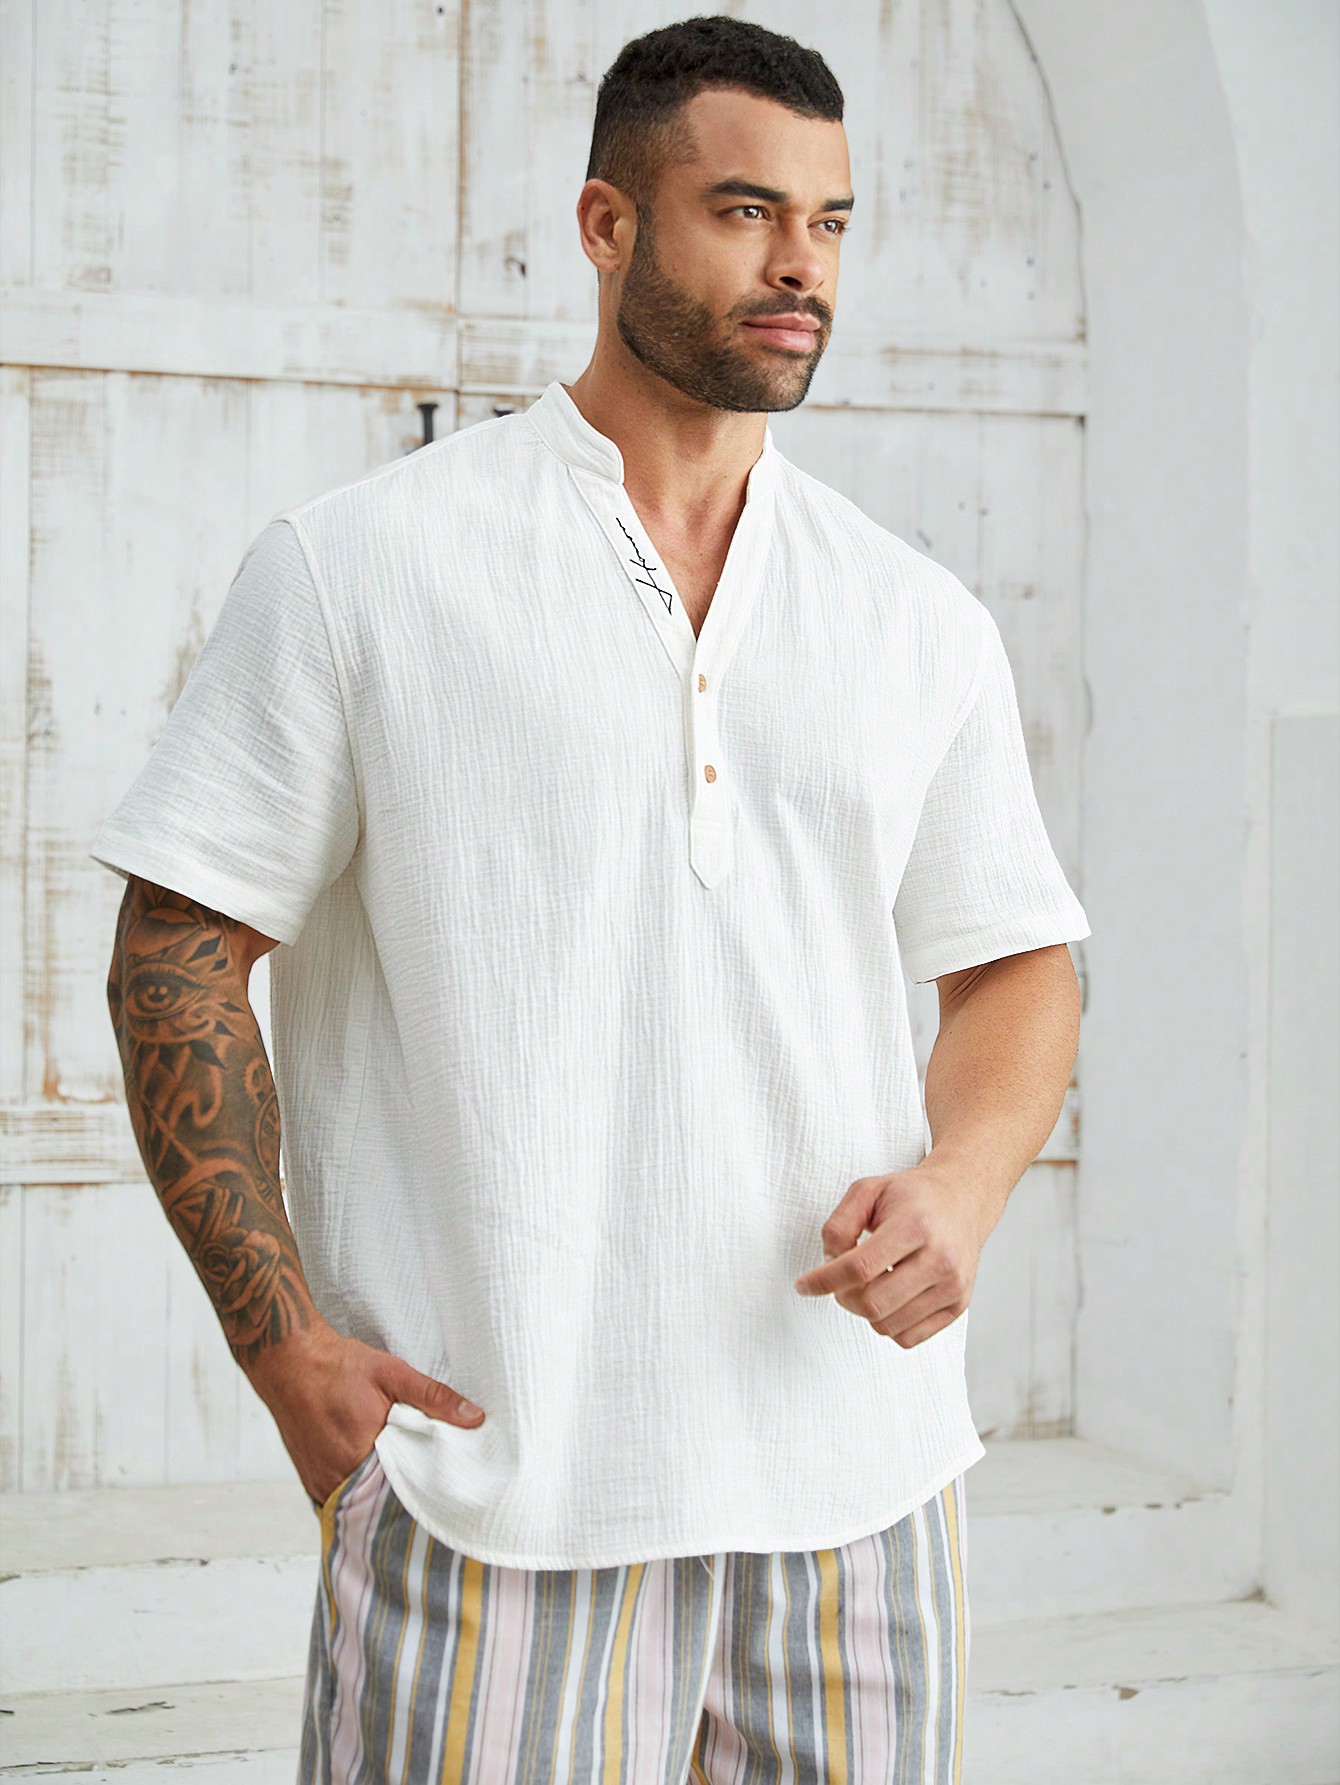 Manfinity Homme Мужская повседневная тканая рубашка больших размеров с коротким рукавом, белый униформа медицинская с коротким рукавом и v образным вырезом a50